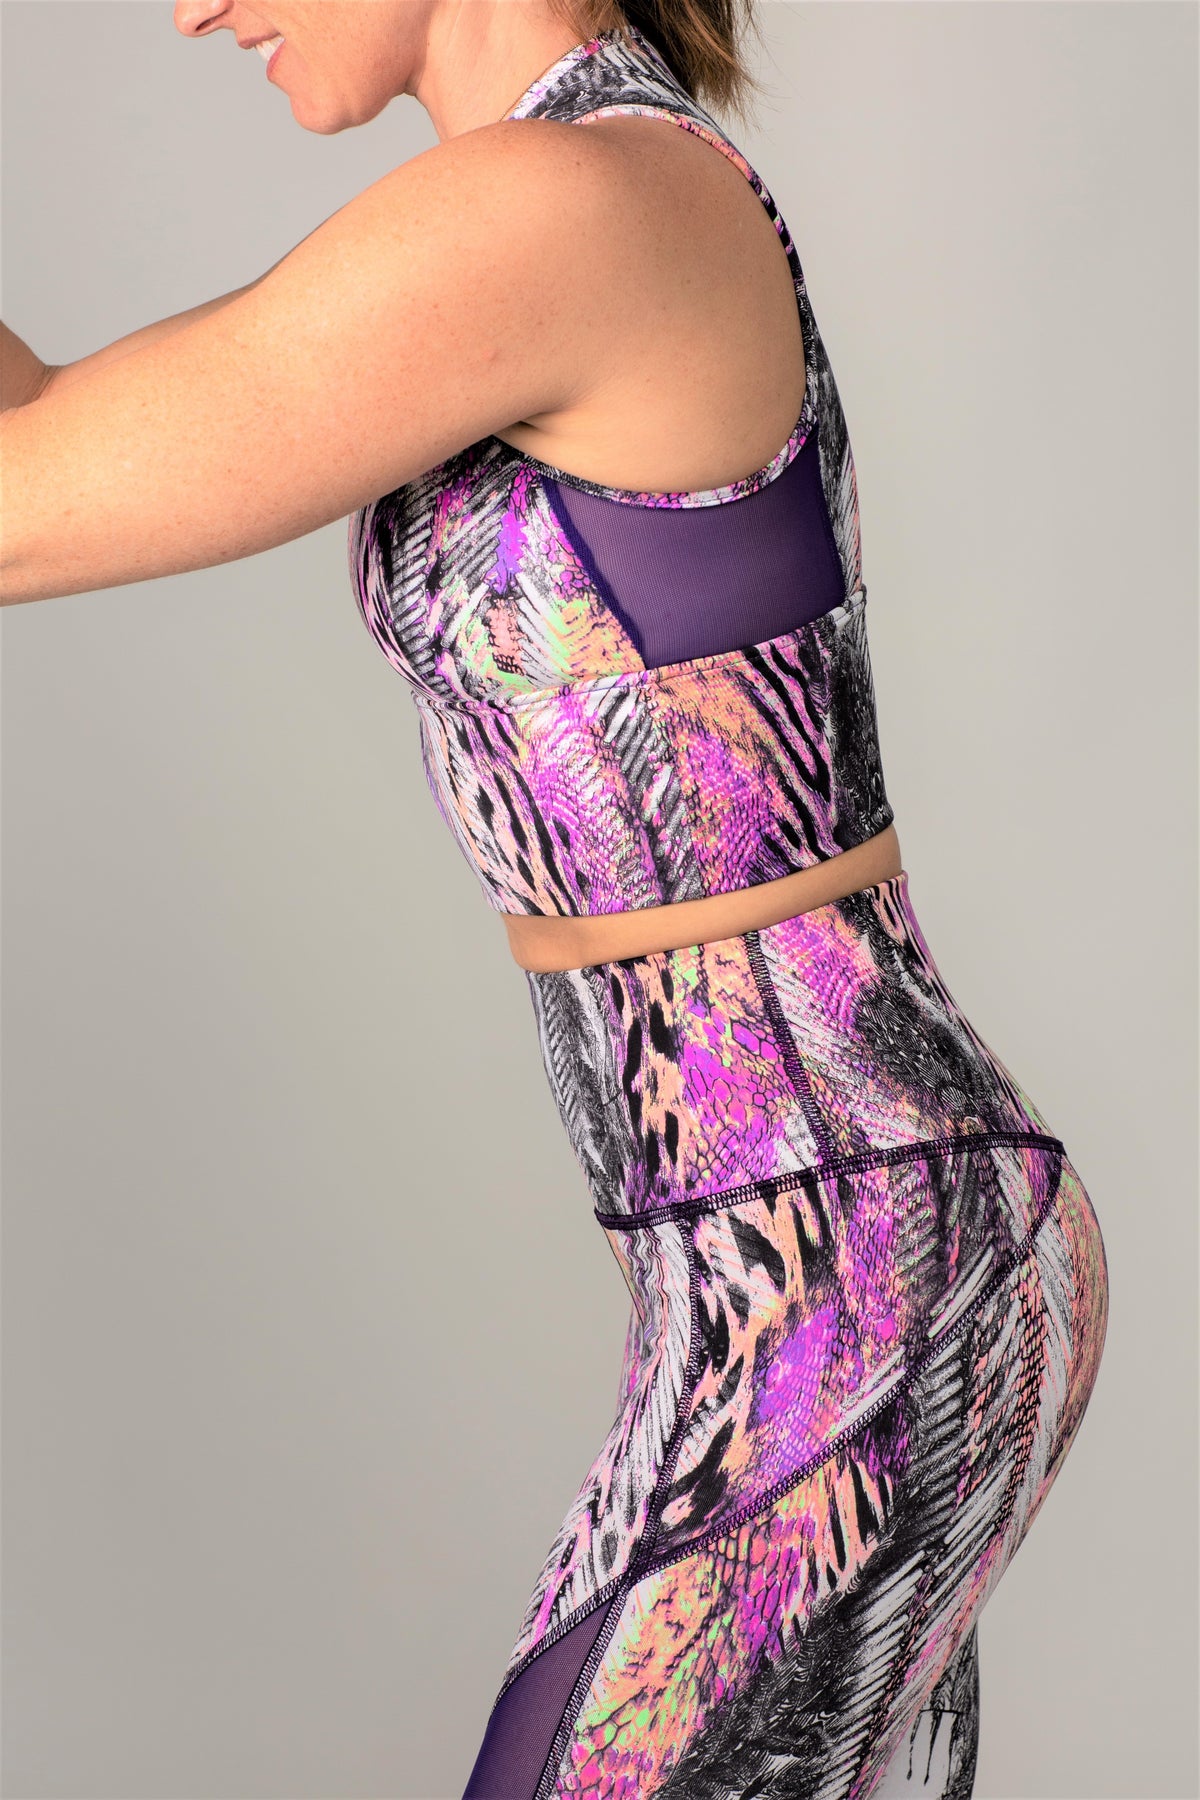 Purple pink exotic print leggings and top 7/8 length 